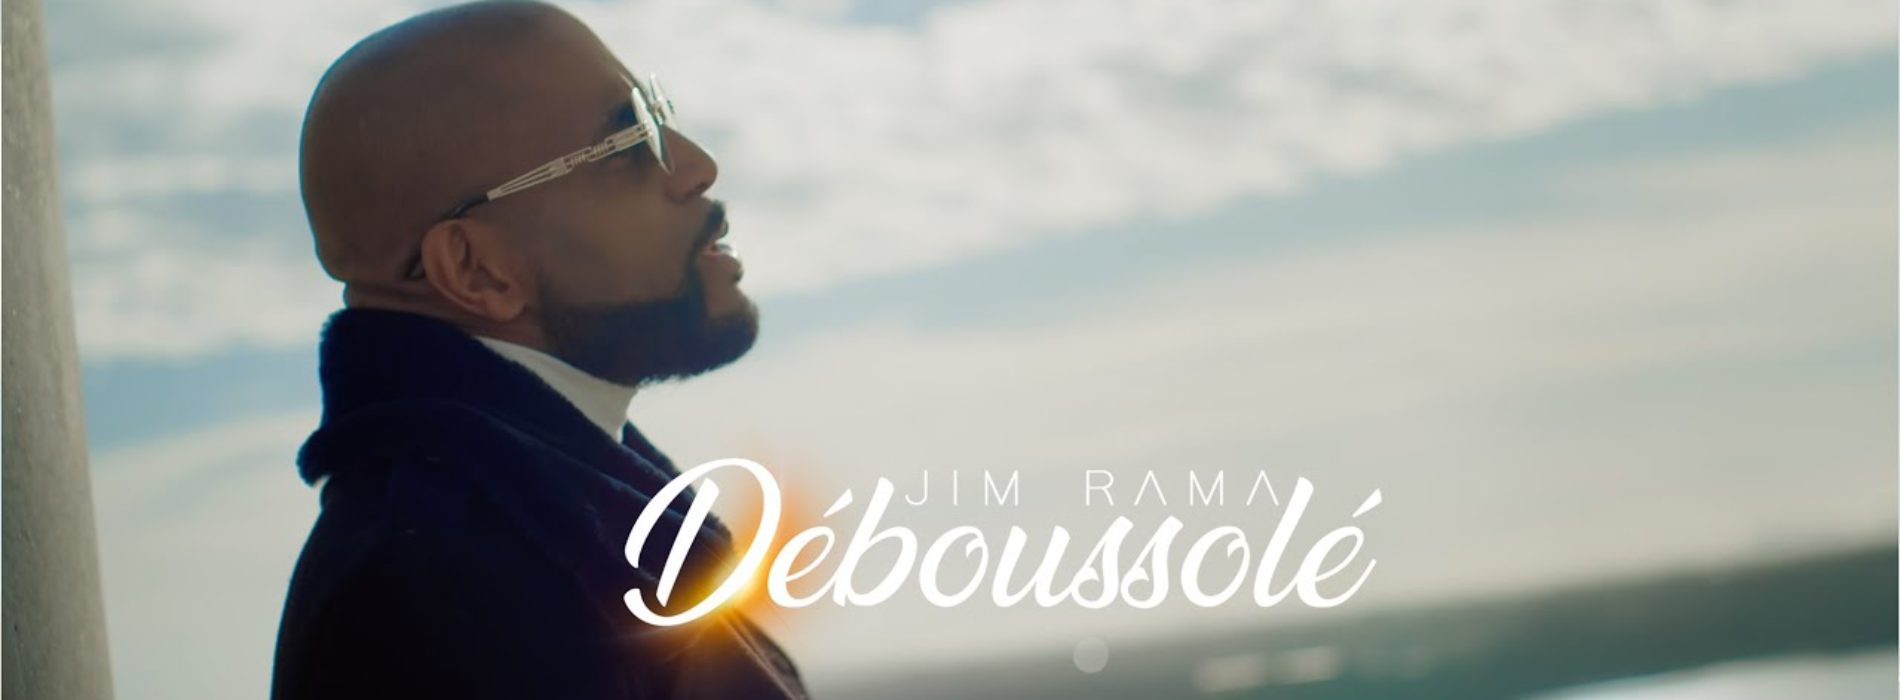 Jim Rama Déboussolé ( official video ) – Avril 2020